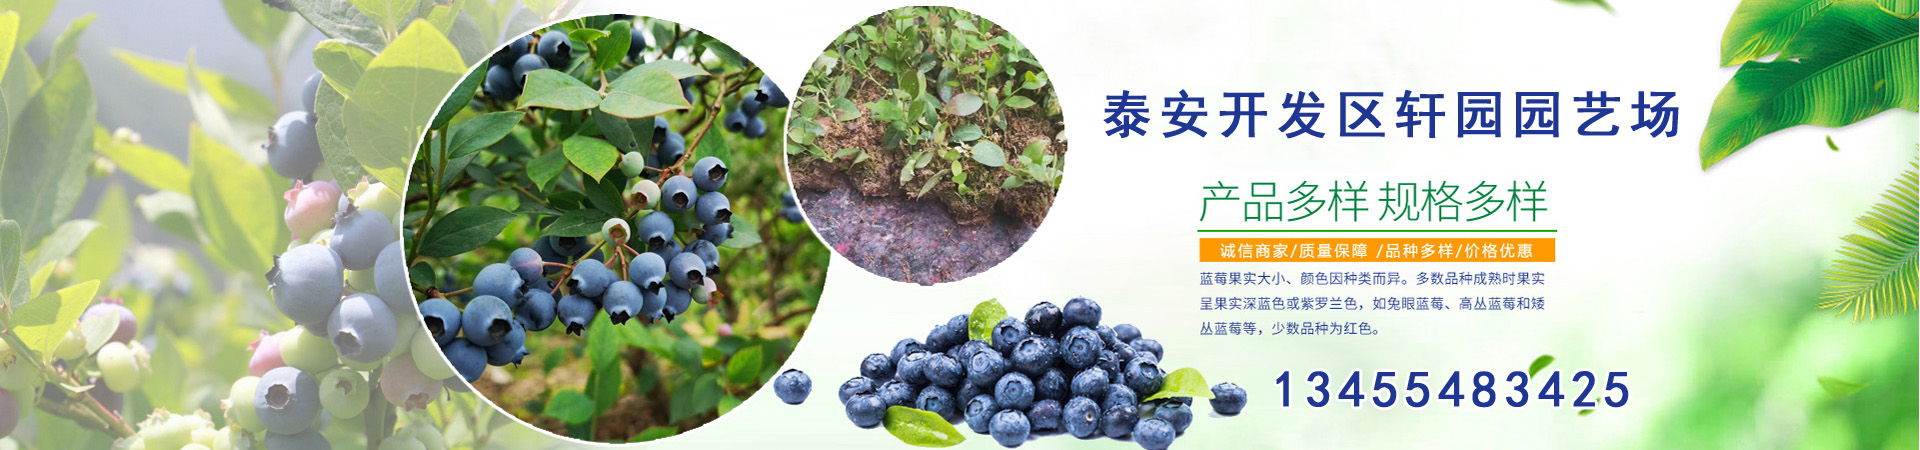 蓝莓苗、北京本地蓝莓苗、北京、北京蓝莓苗